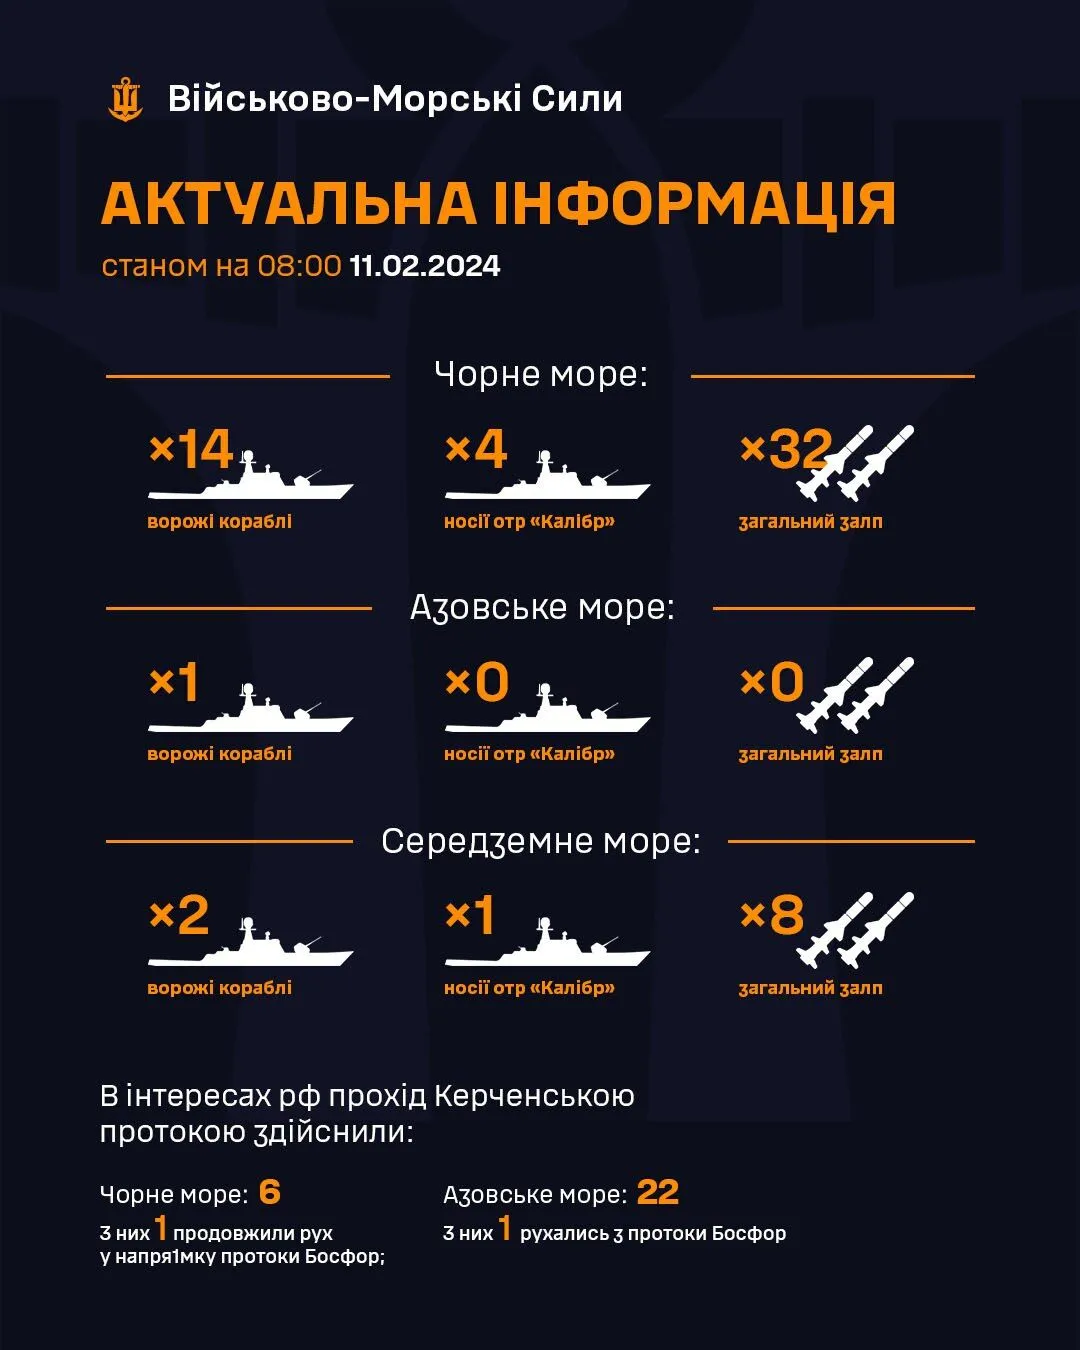 Россия держит в Черном море 14 кораблей, среди которых 4 носителя крылатых ракет "Калибр"